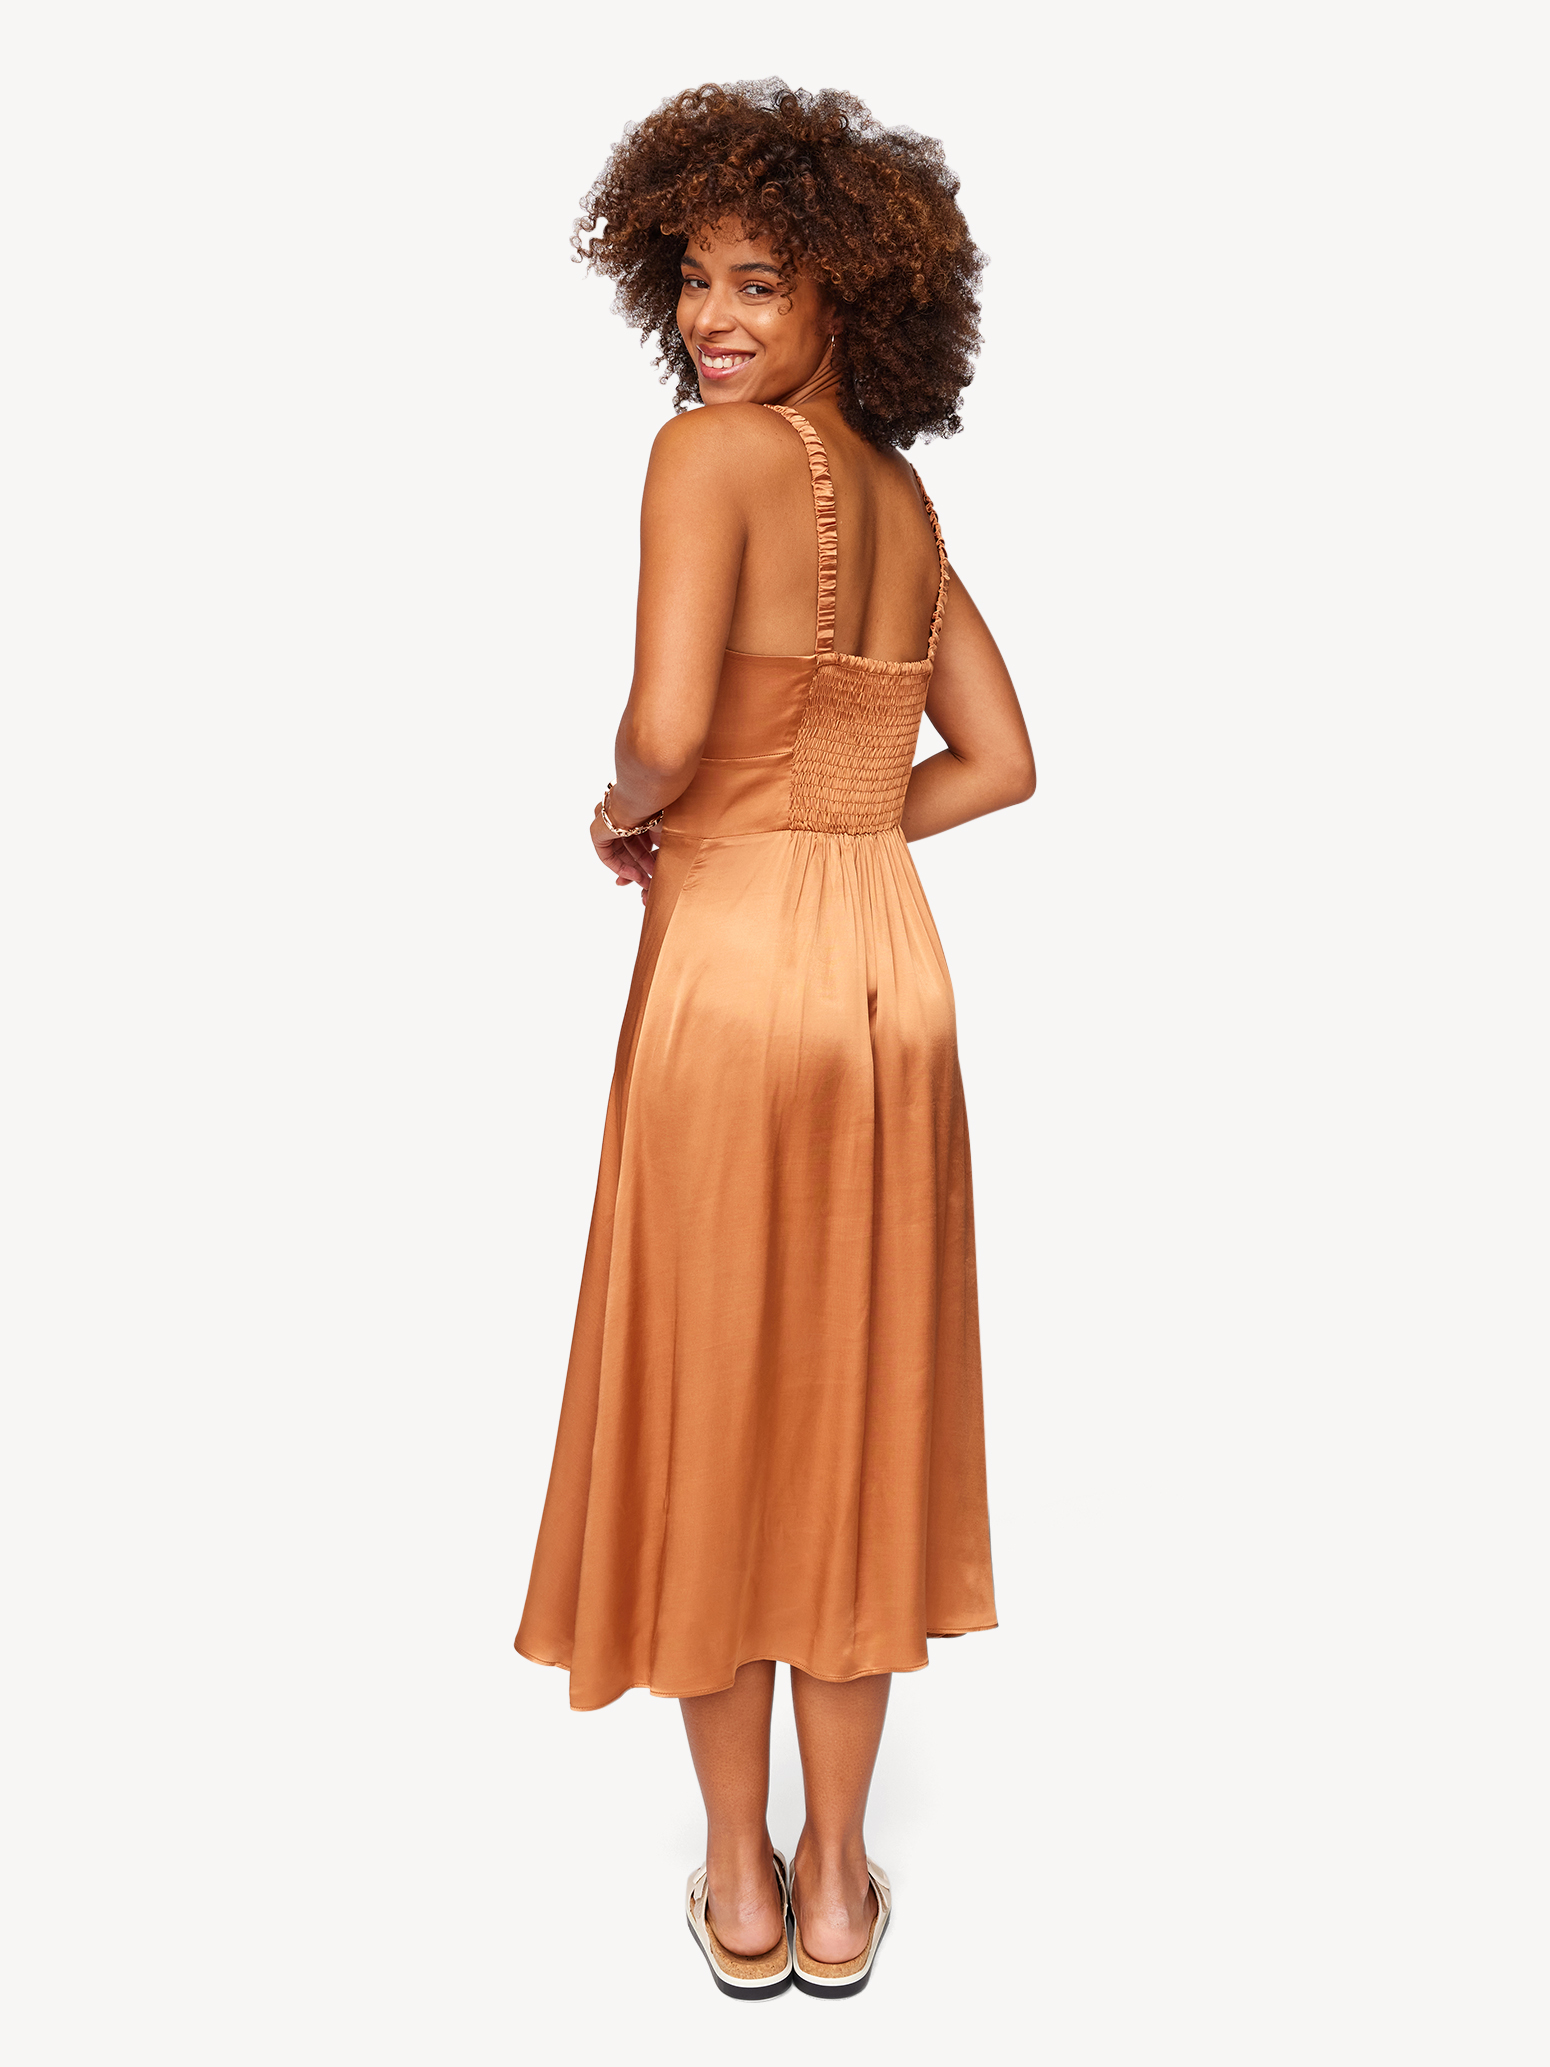 Kleid - braun TAW0049-70023: Kleider Tamaris Röcke kaufen! & online